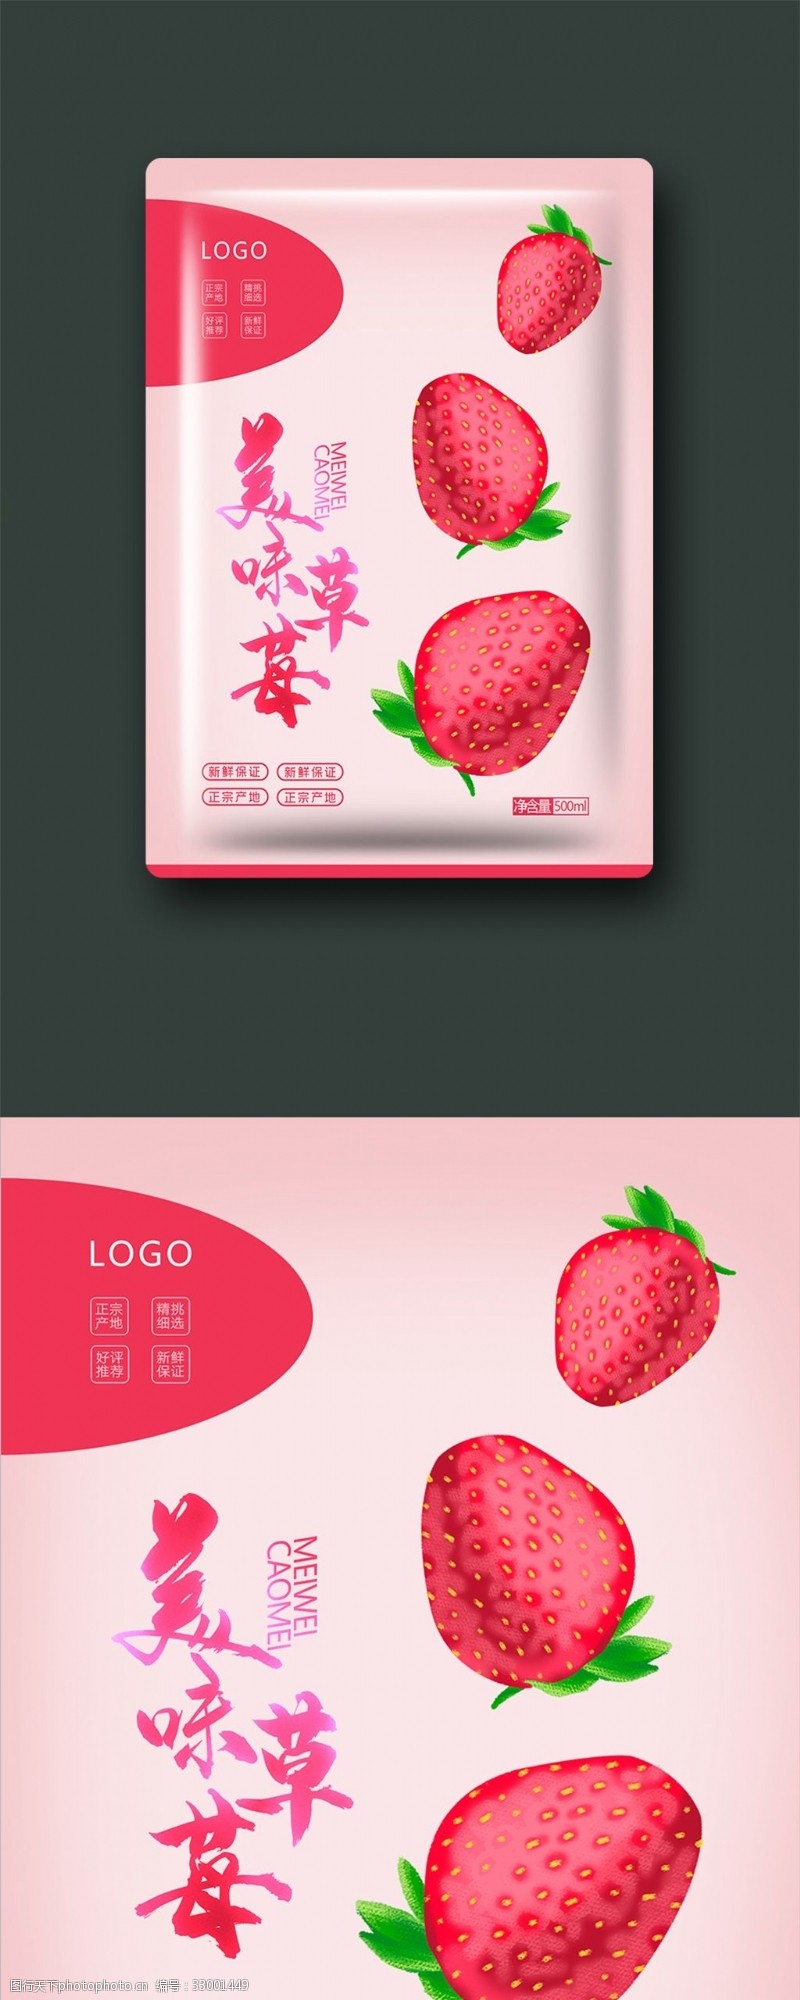 新鲜送草莓新鲜水果包装礼盒设计